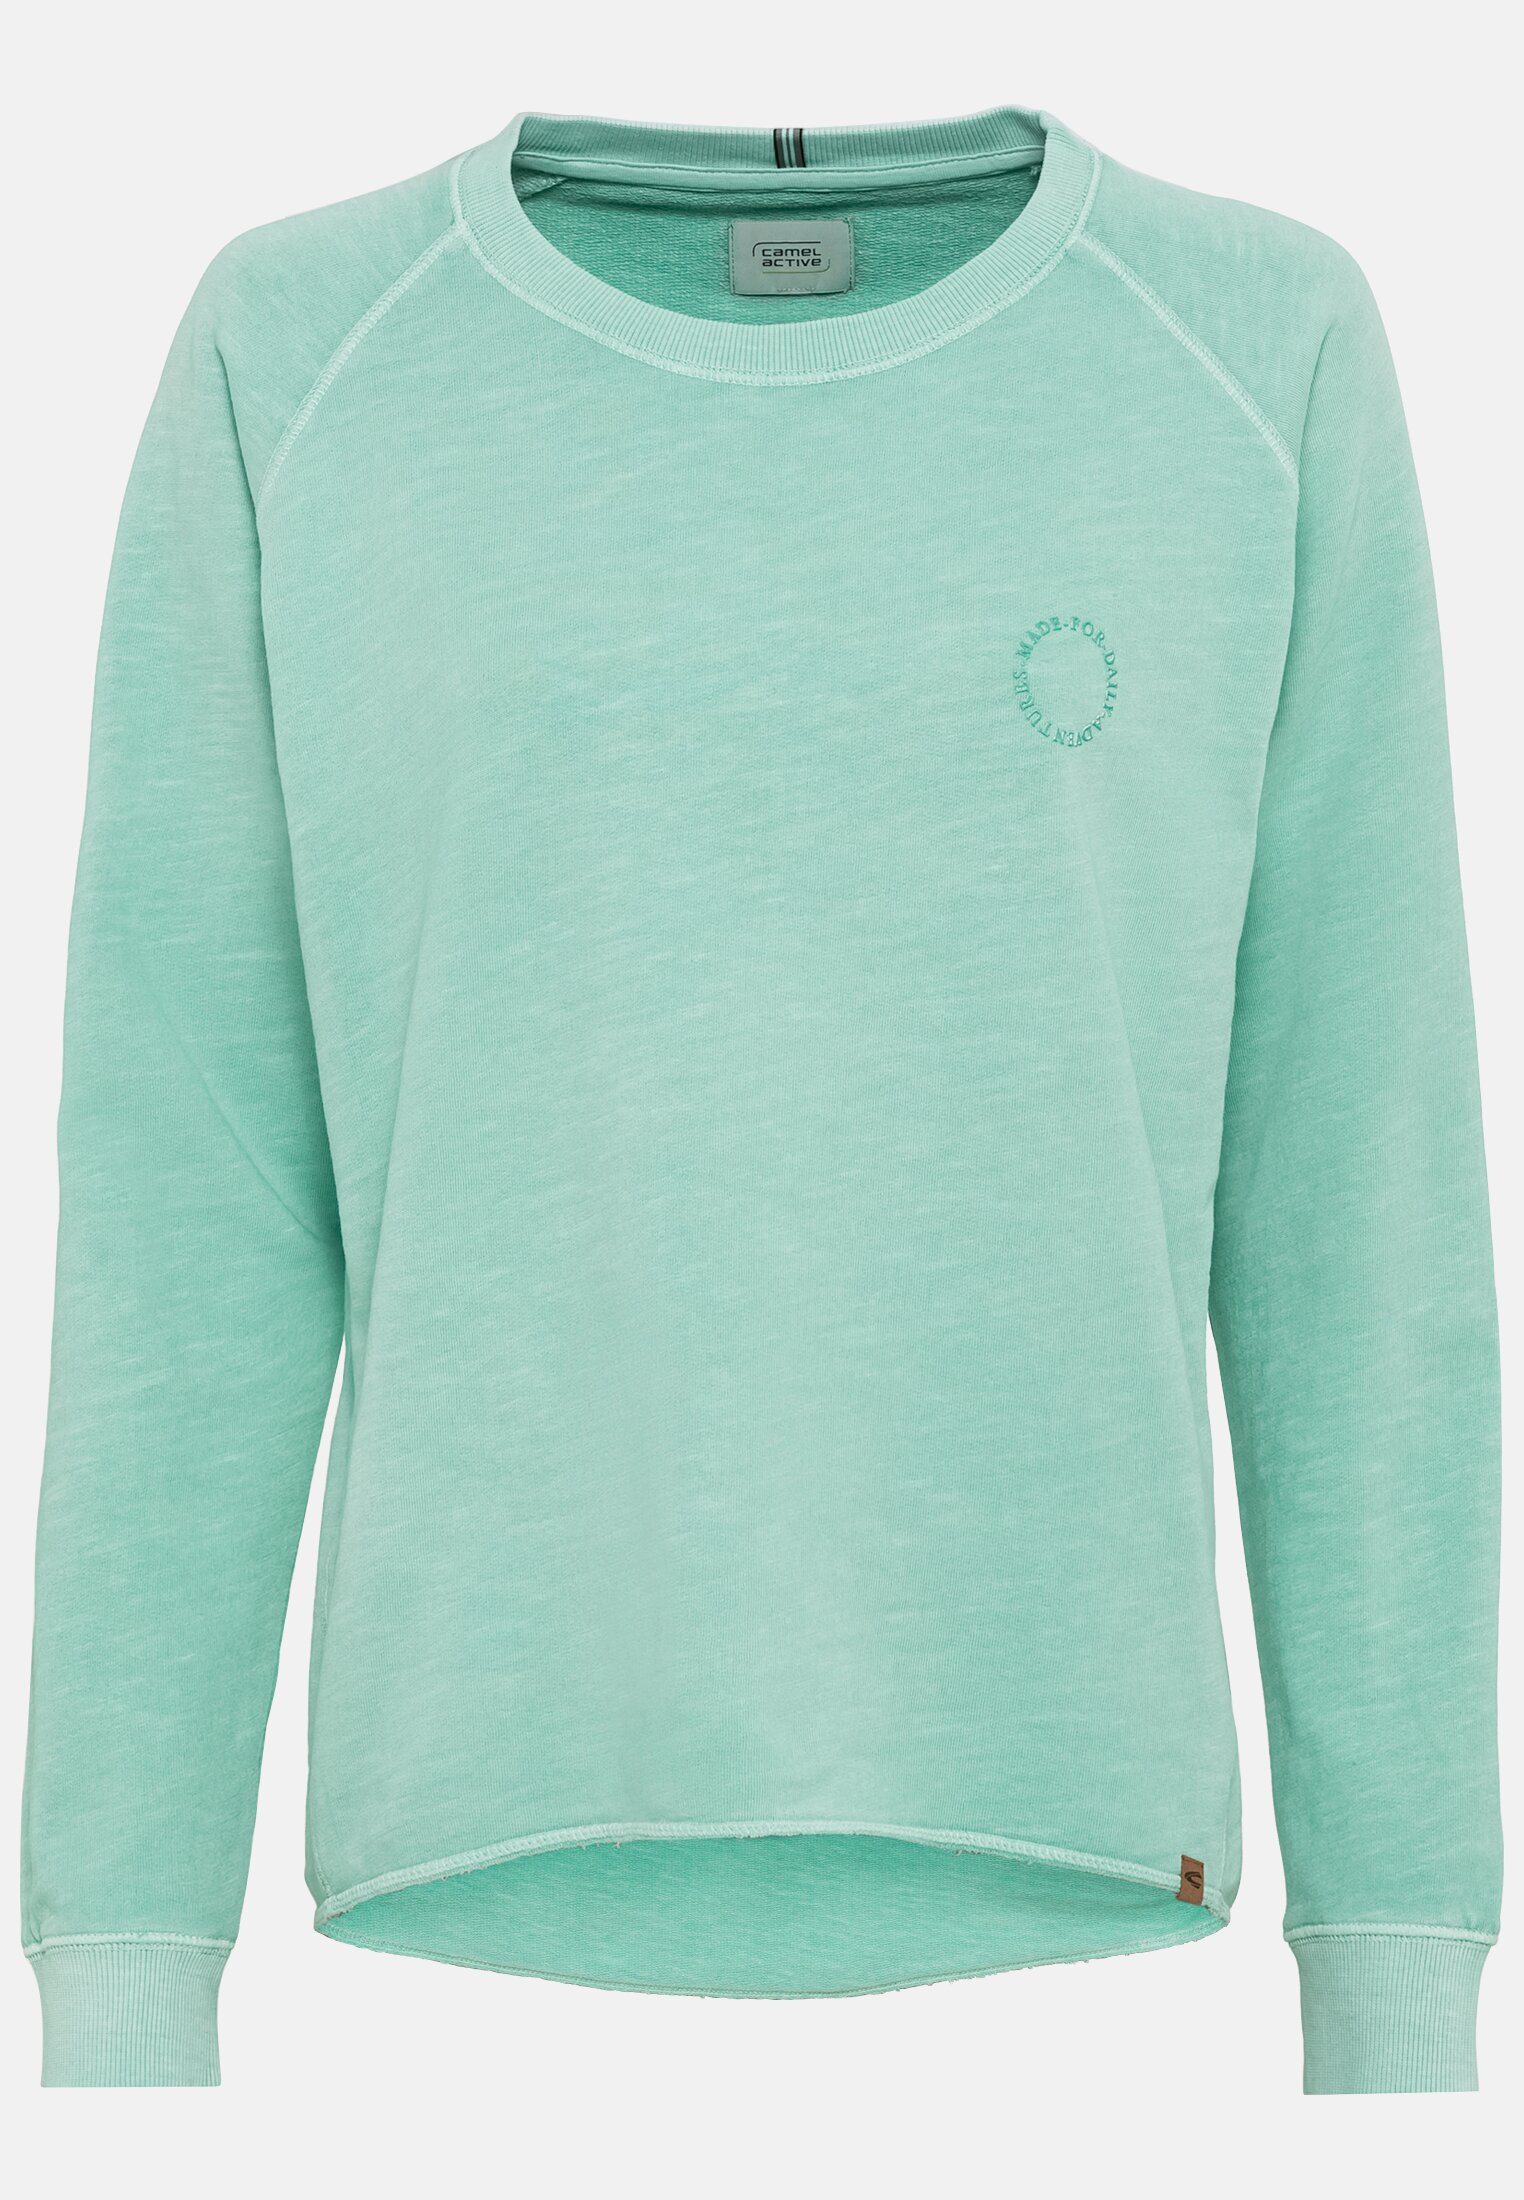 Sweatshirt for Damen in Green | S | camel active